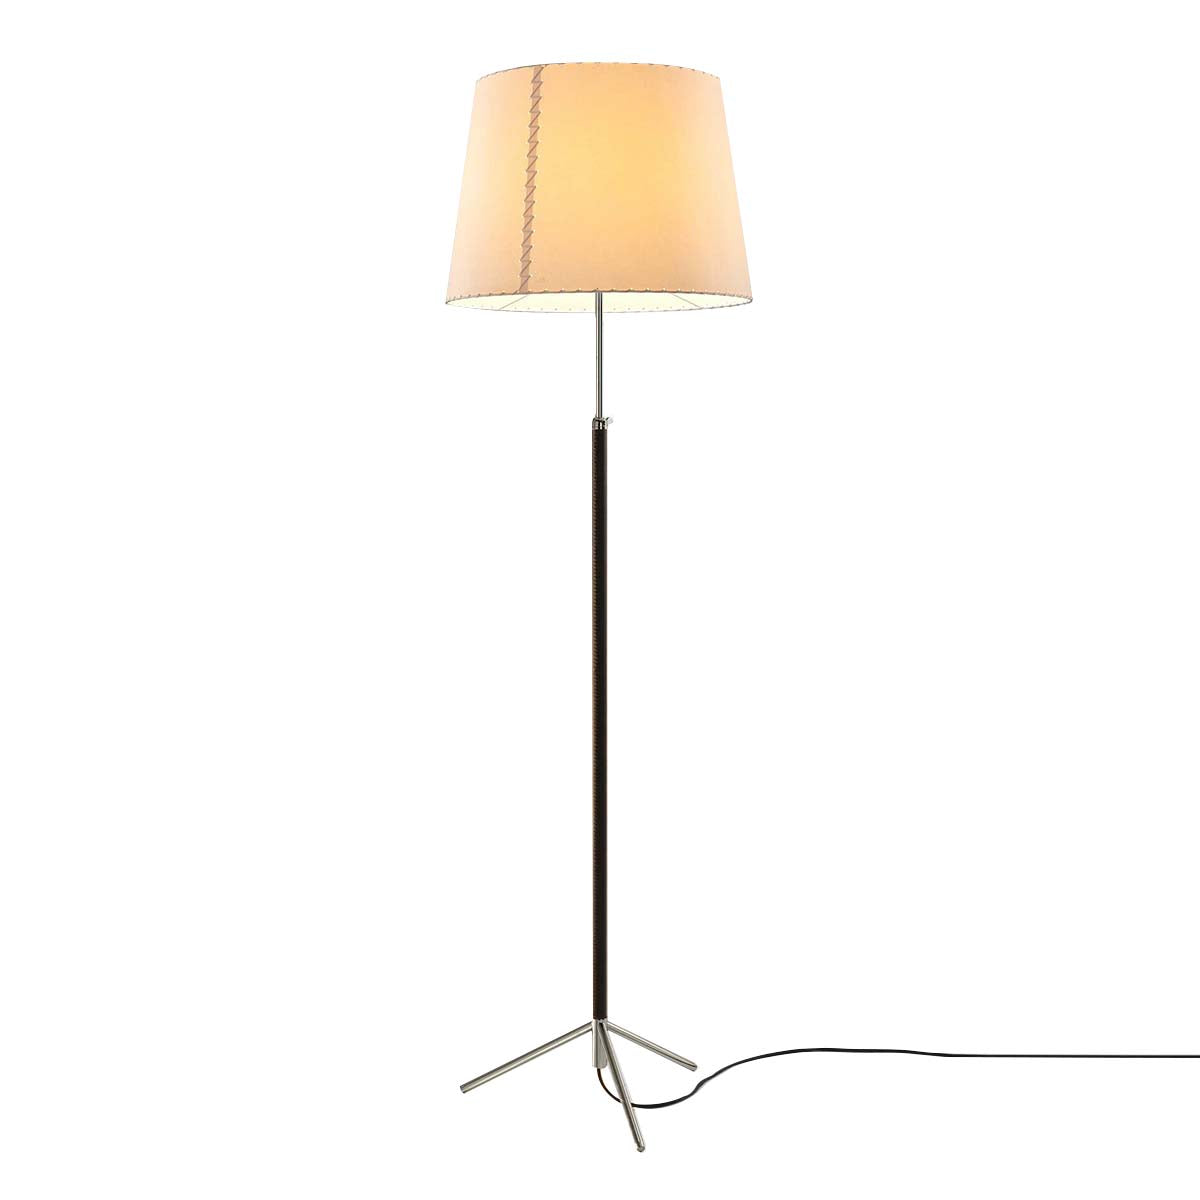 Pie de Salón Floor Lamp: G1 + Chrome-Plated + Stitched Beige Parchment